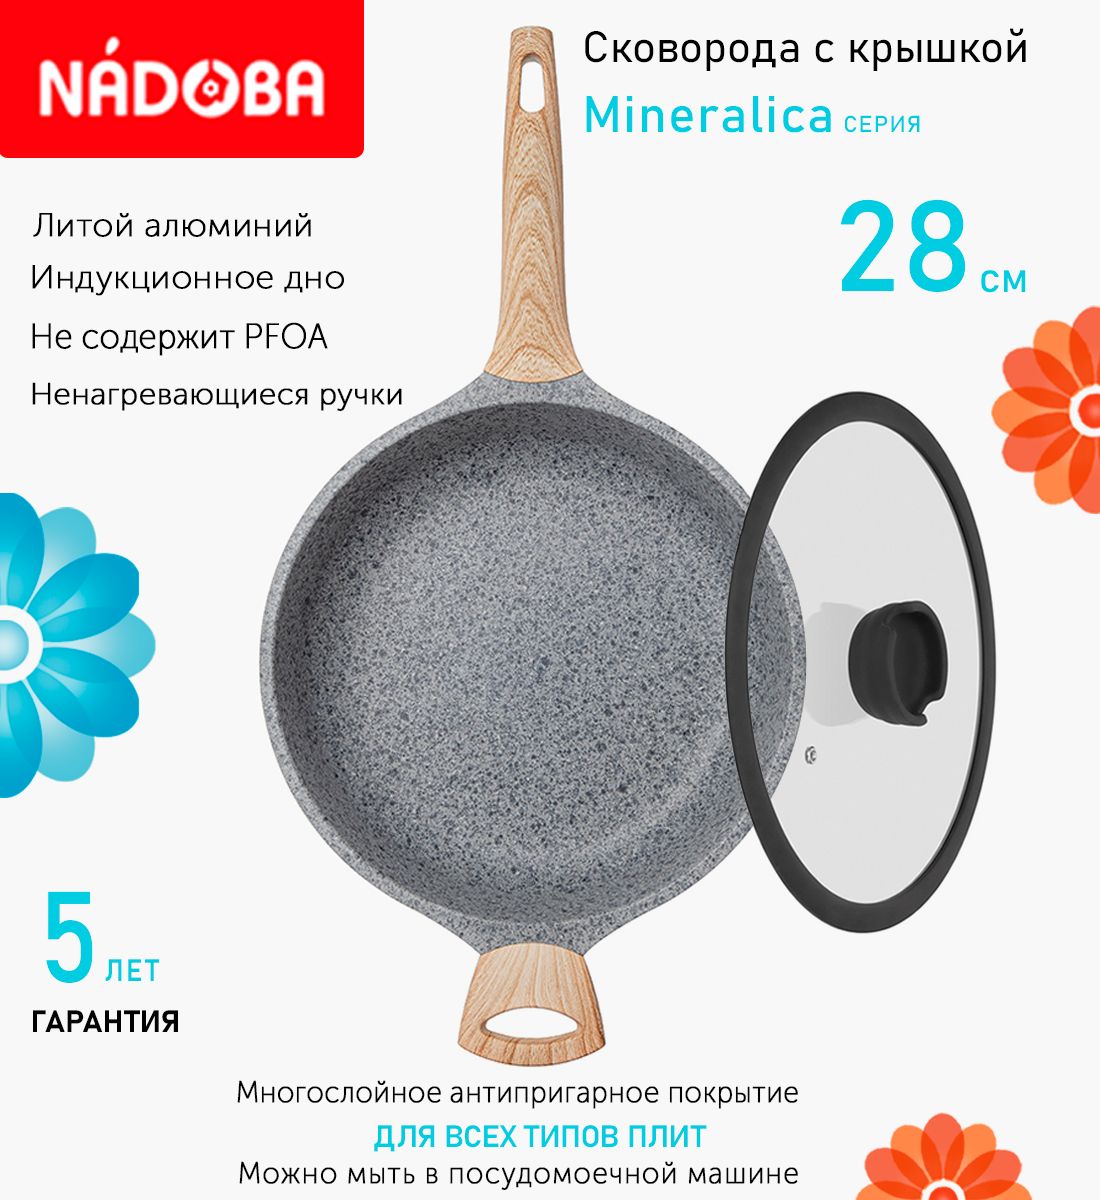 Сковорода глубокая с крышкой NADOBA 28 см серия Mineralica